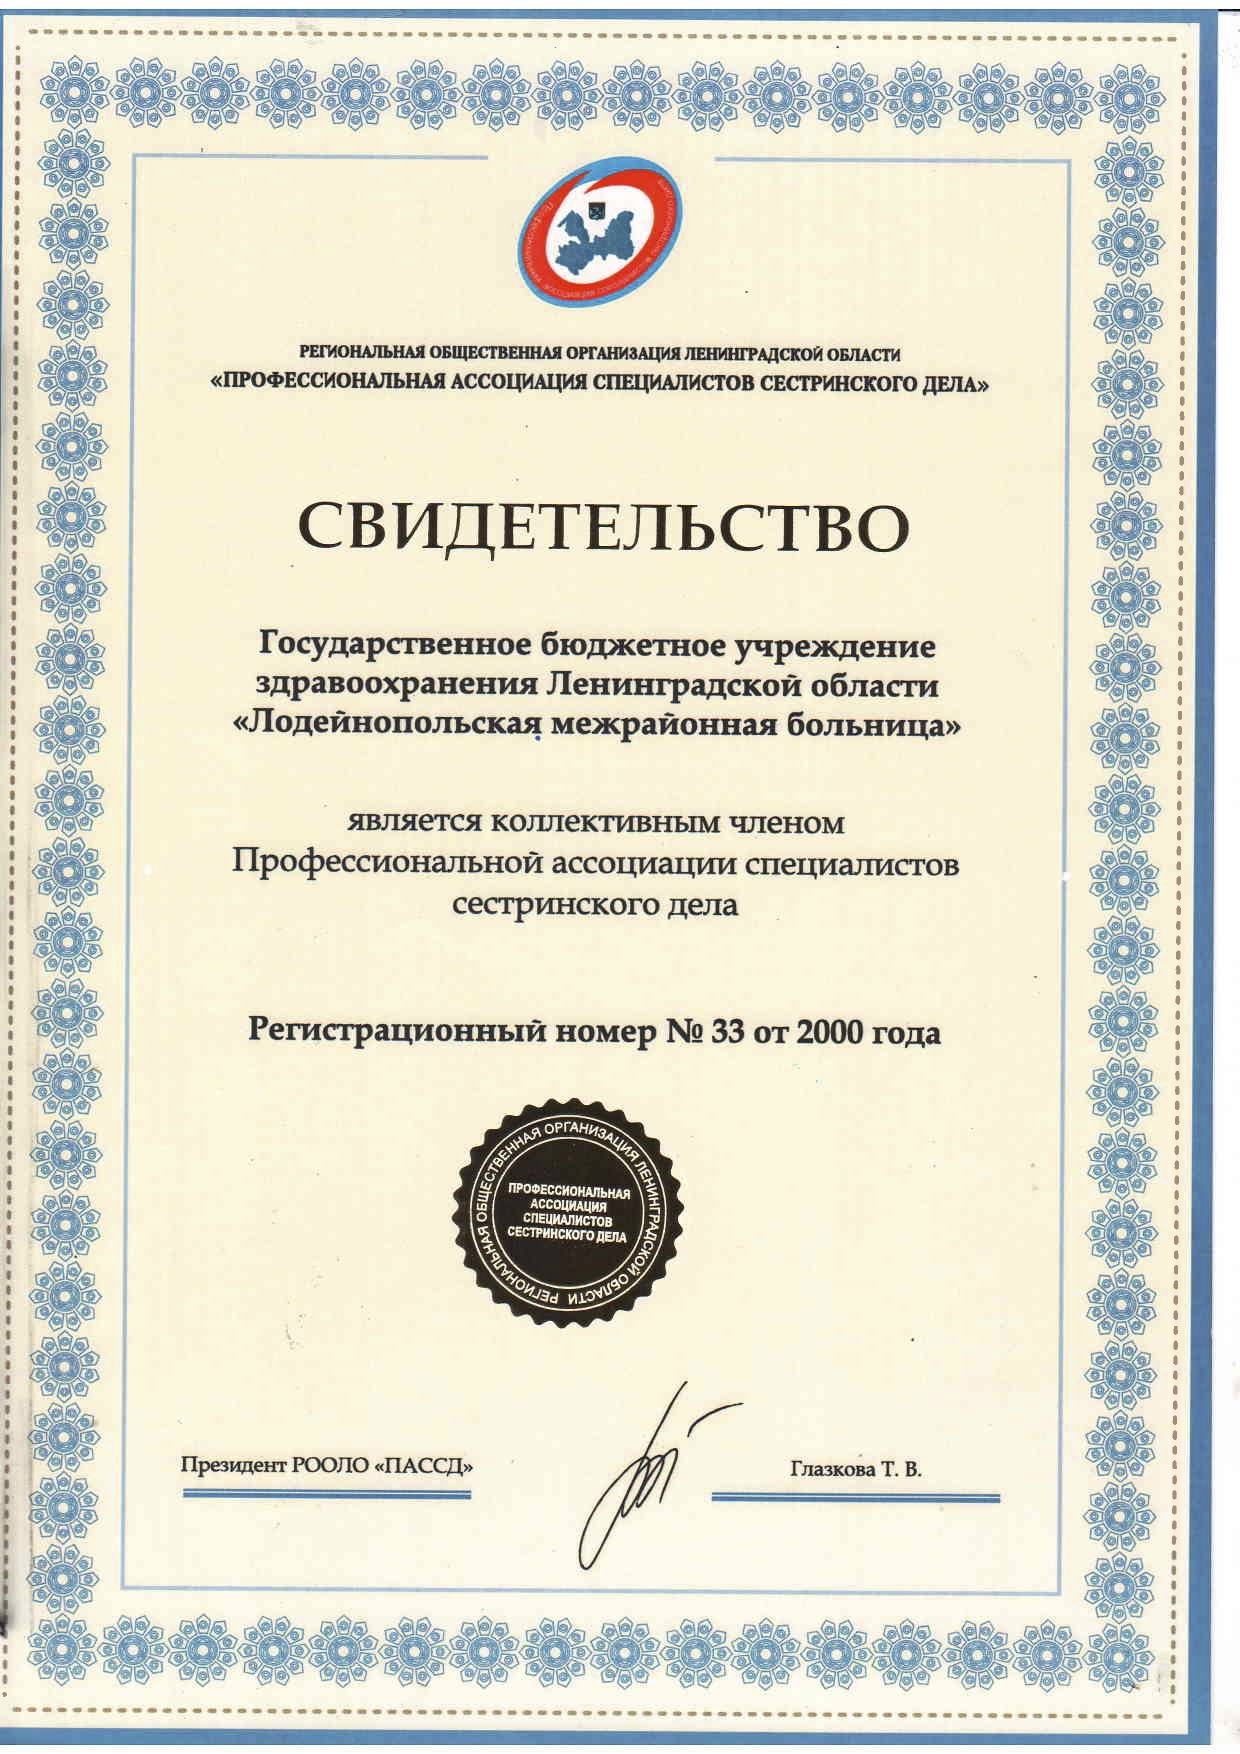 ГБУЗ ЛО "Лодейнопольская МБ": сертификат